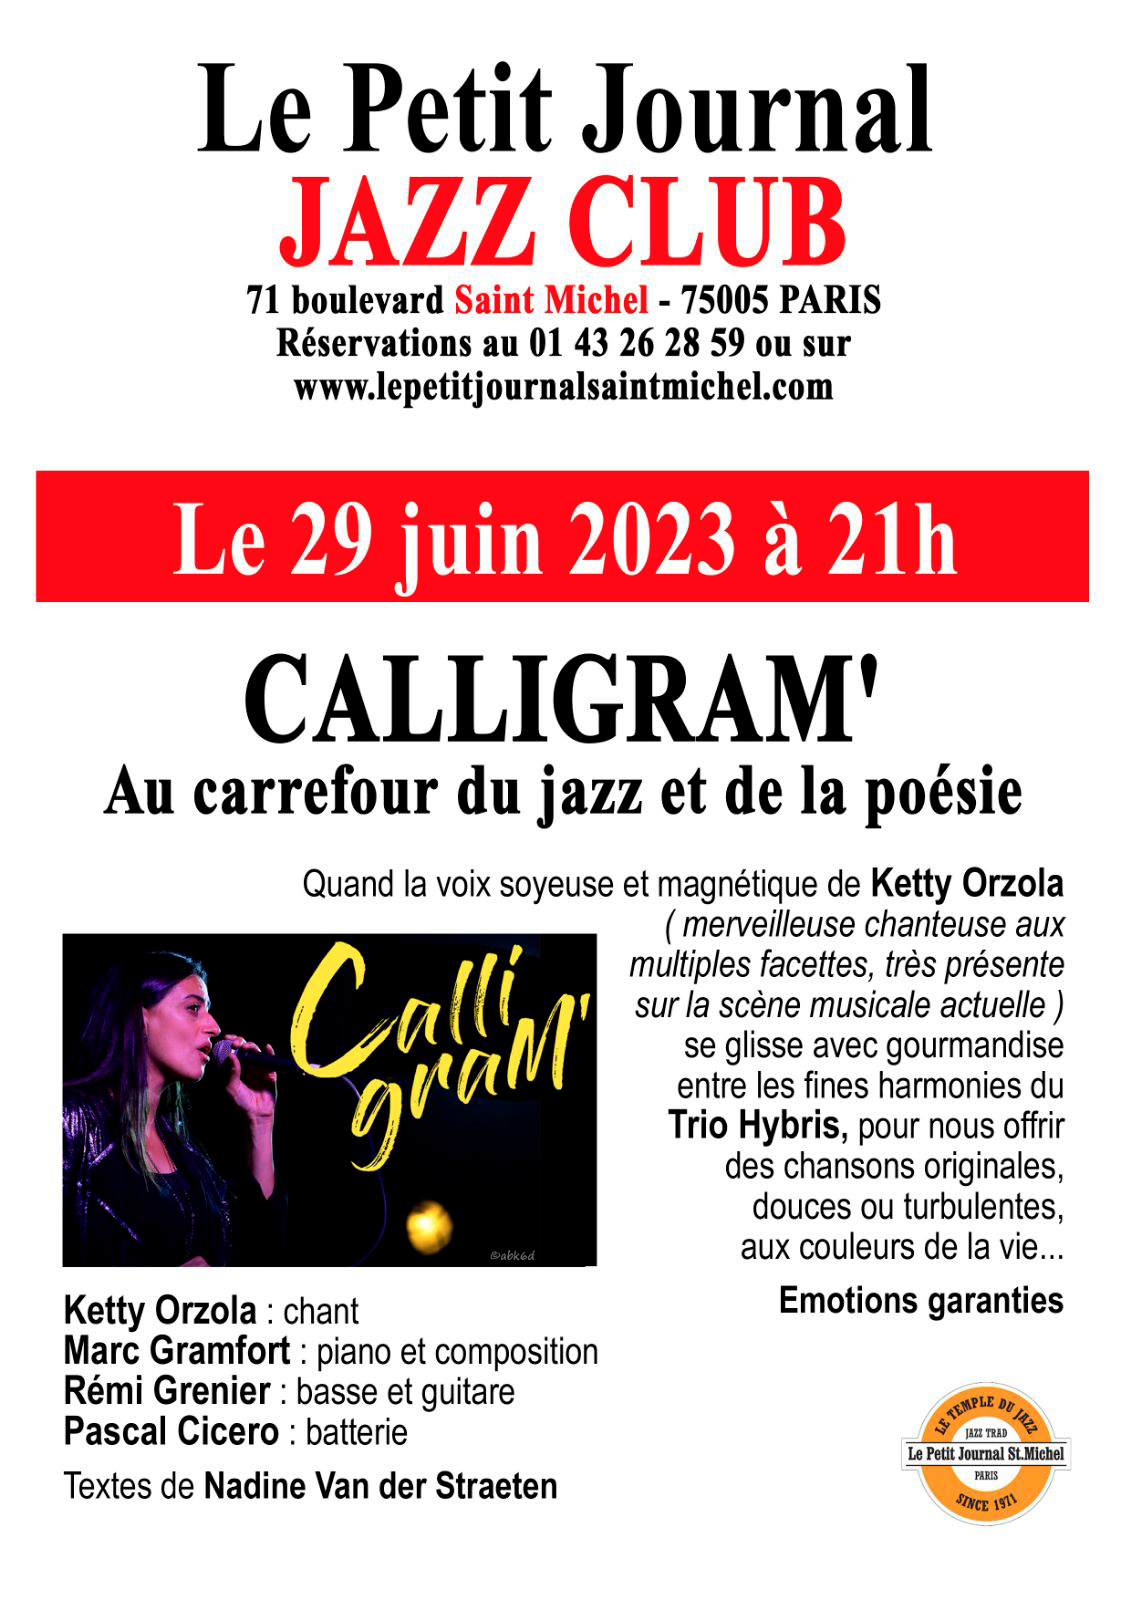 Calligram' - Au carrefour du jazz et de la poésie Paris